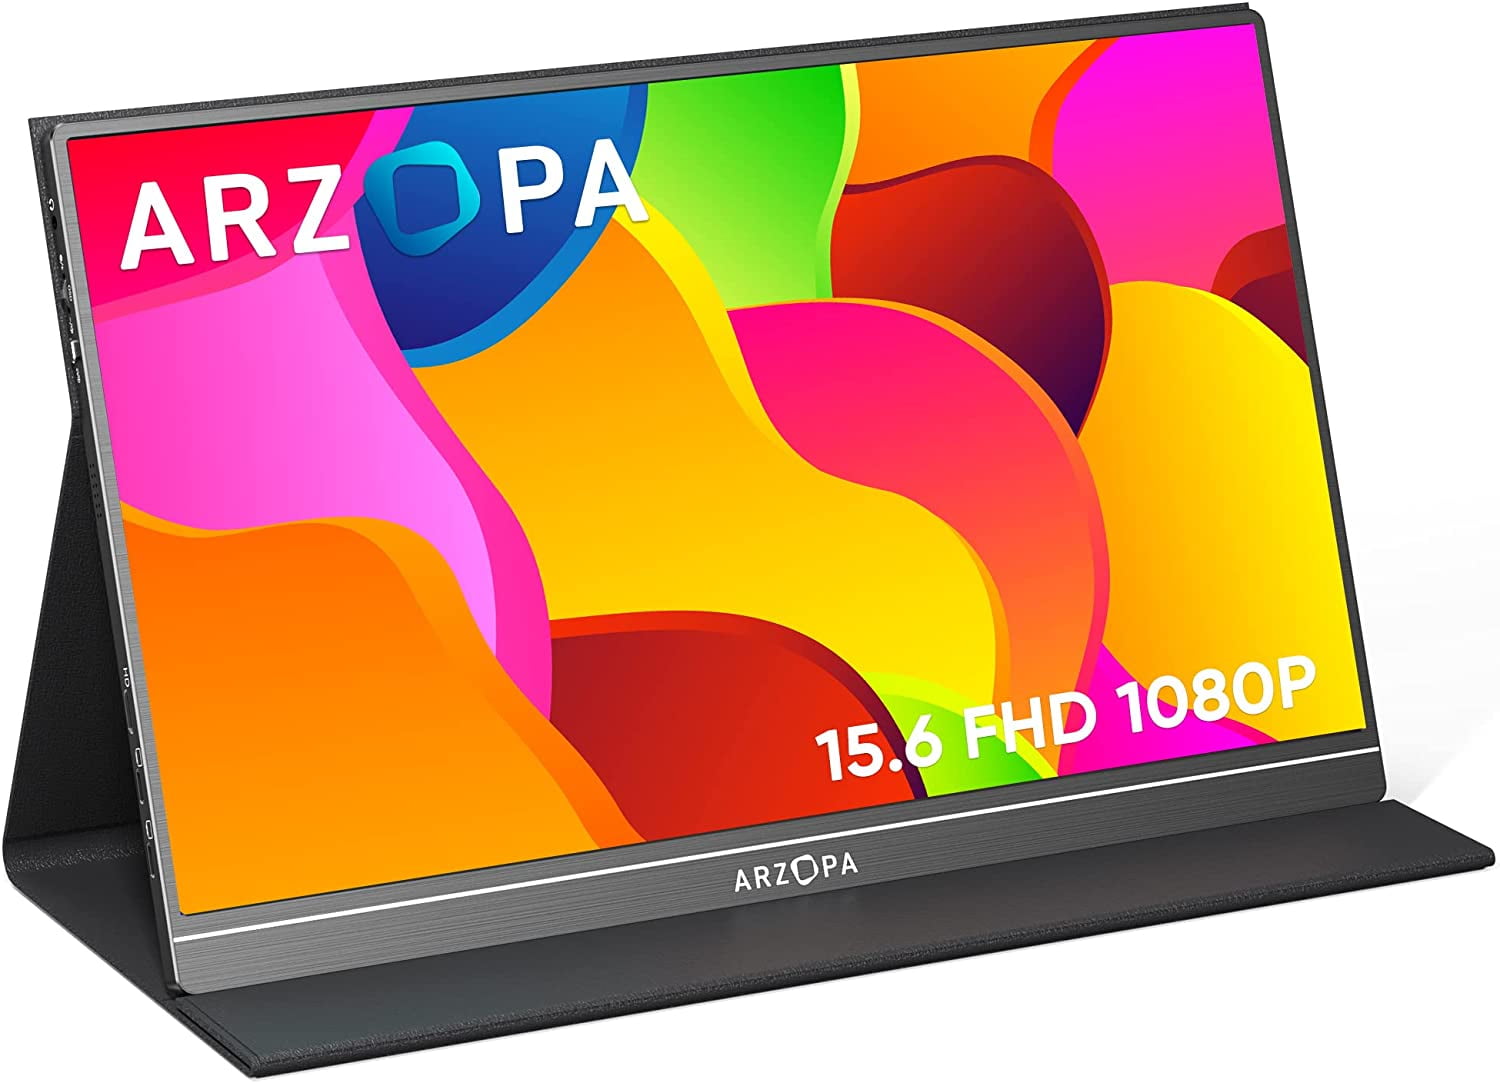 Monitor portátil para juegos E1 Extreme 4K UHD de 15,6″ – Arzopa